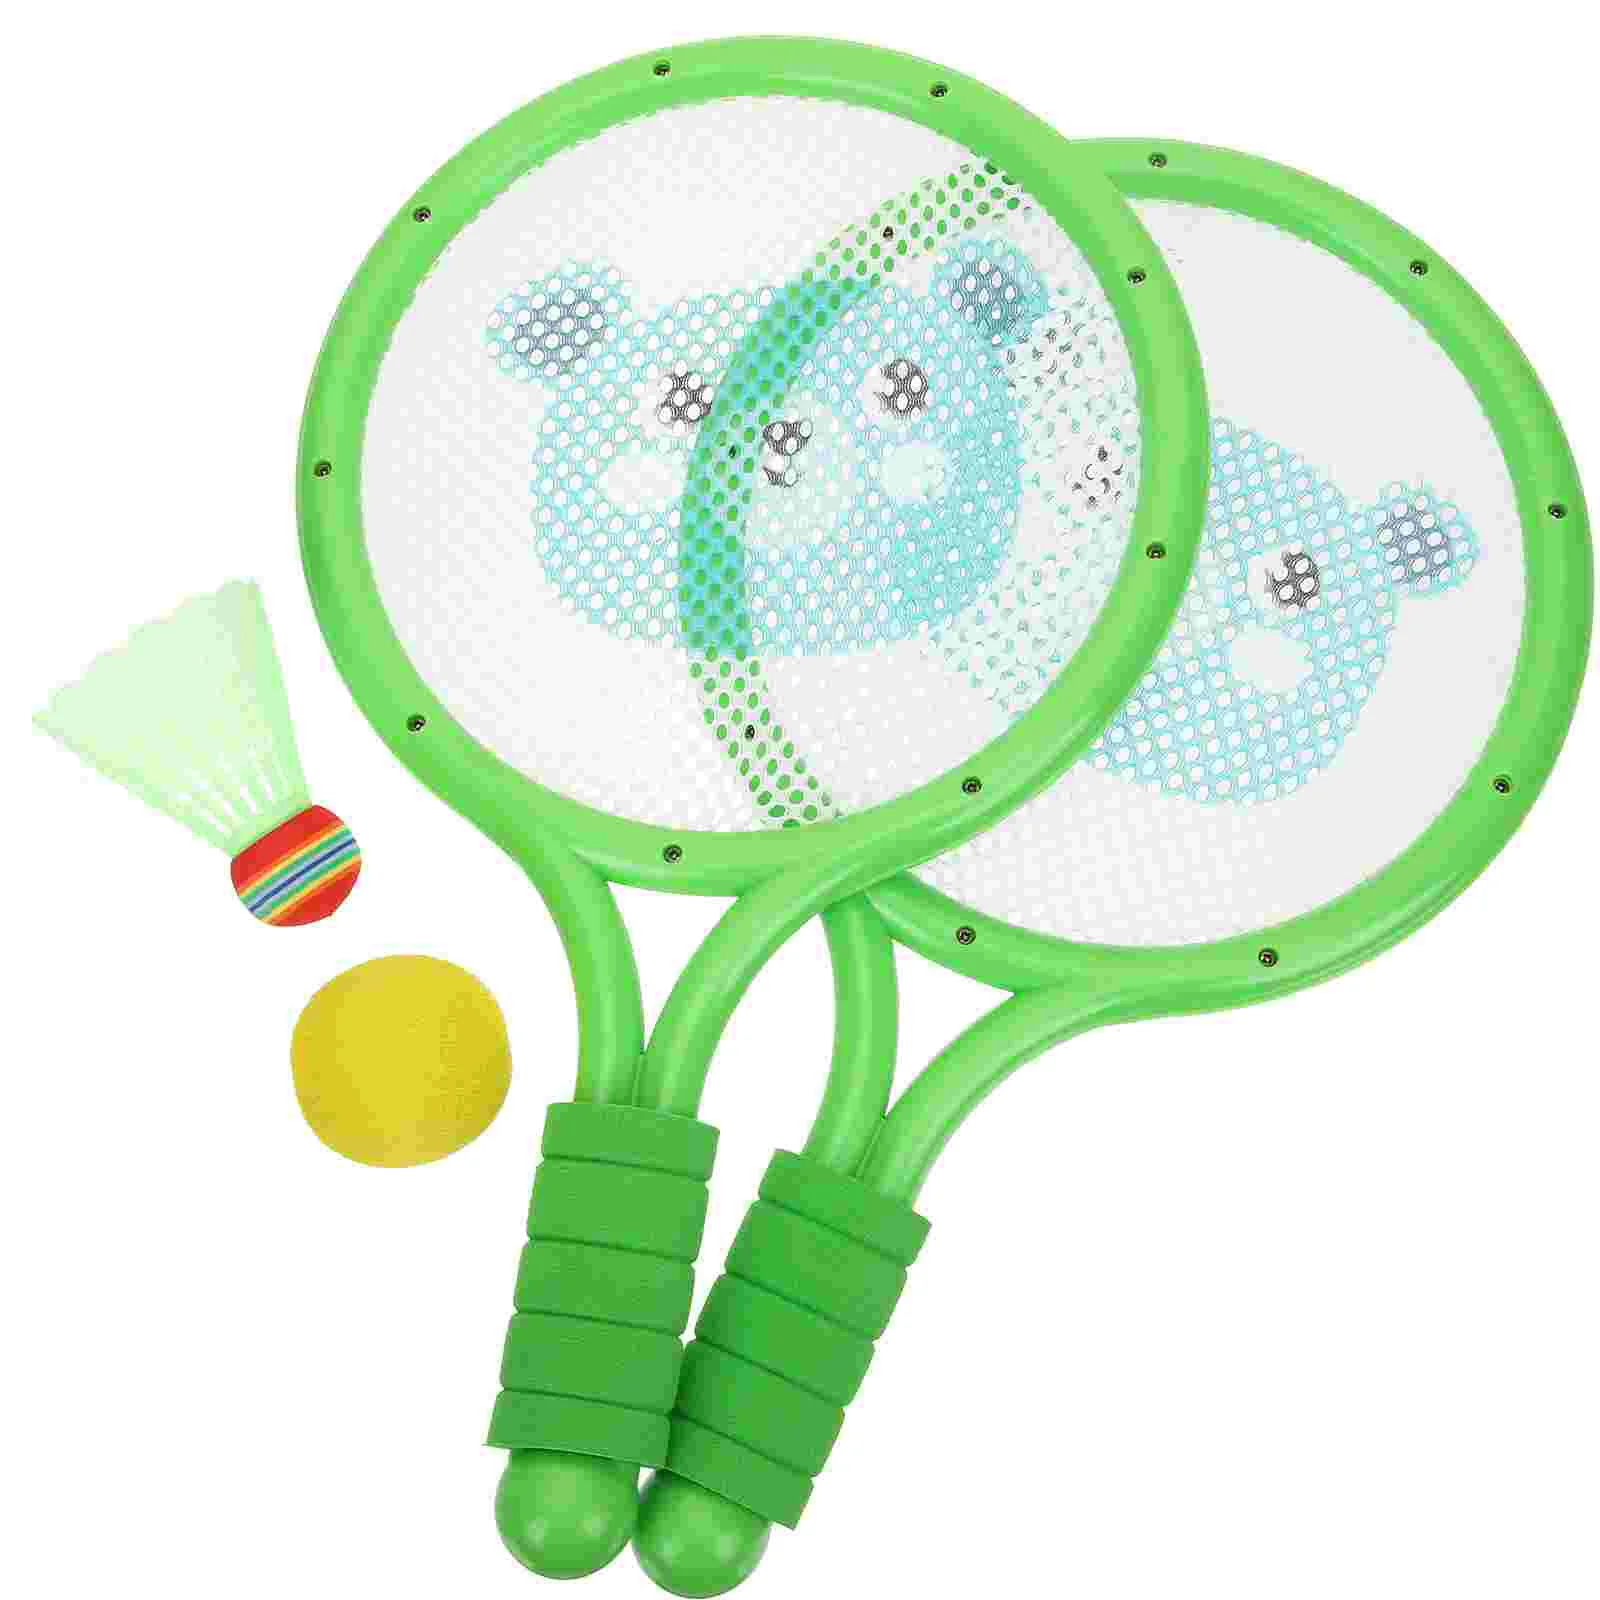 1 Set of Outdoor Badminton Racket Interactive Badminton Toy Children Outdoor Plaything